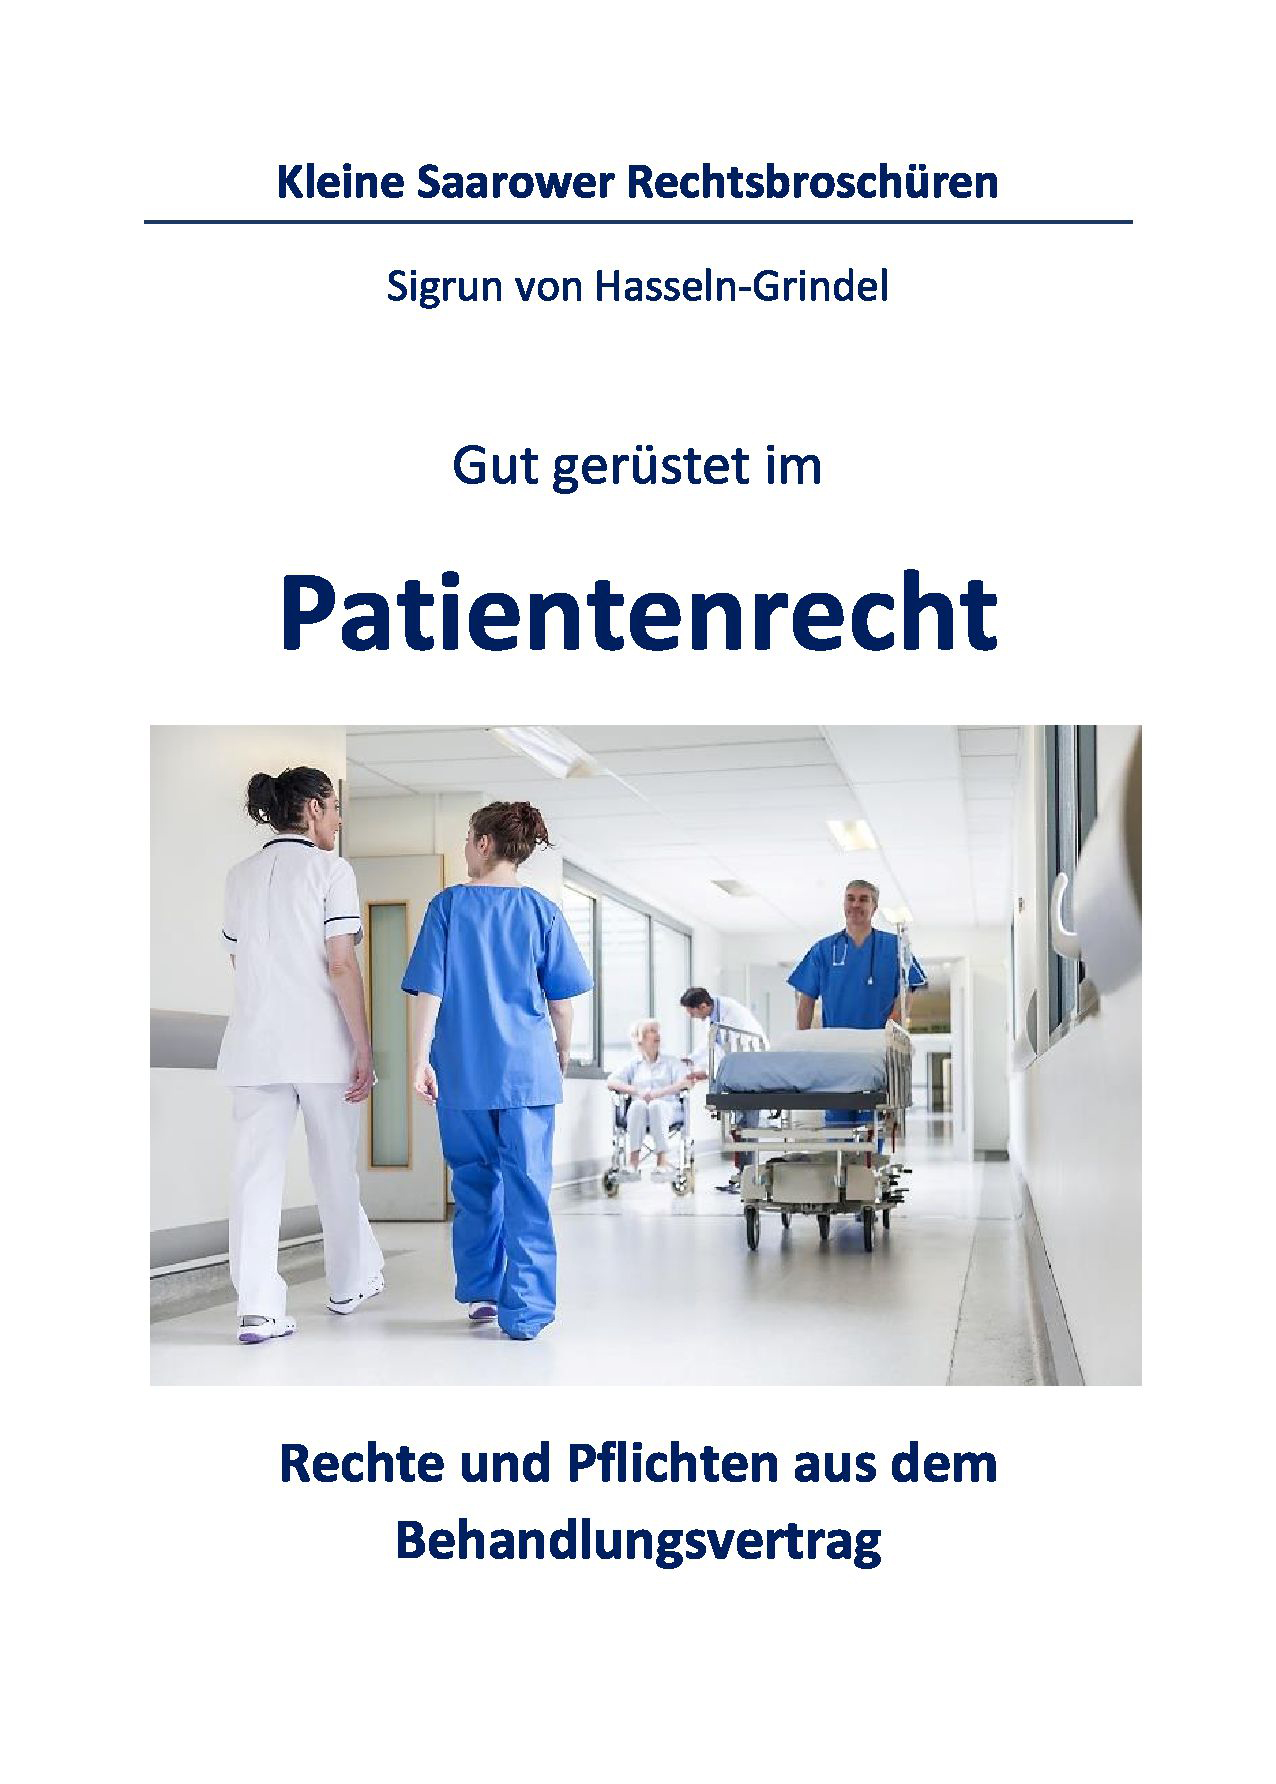 You are currently viewing Kleine Bad Saarower Rechtsbroschüren – Patientenrecht